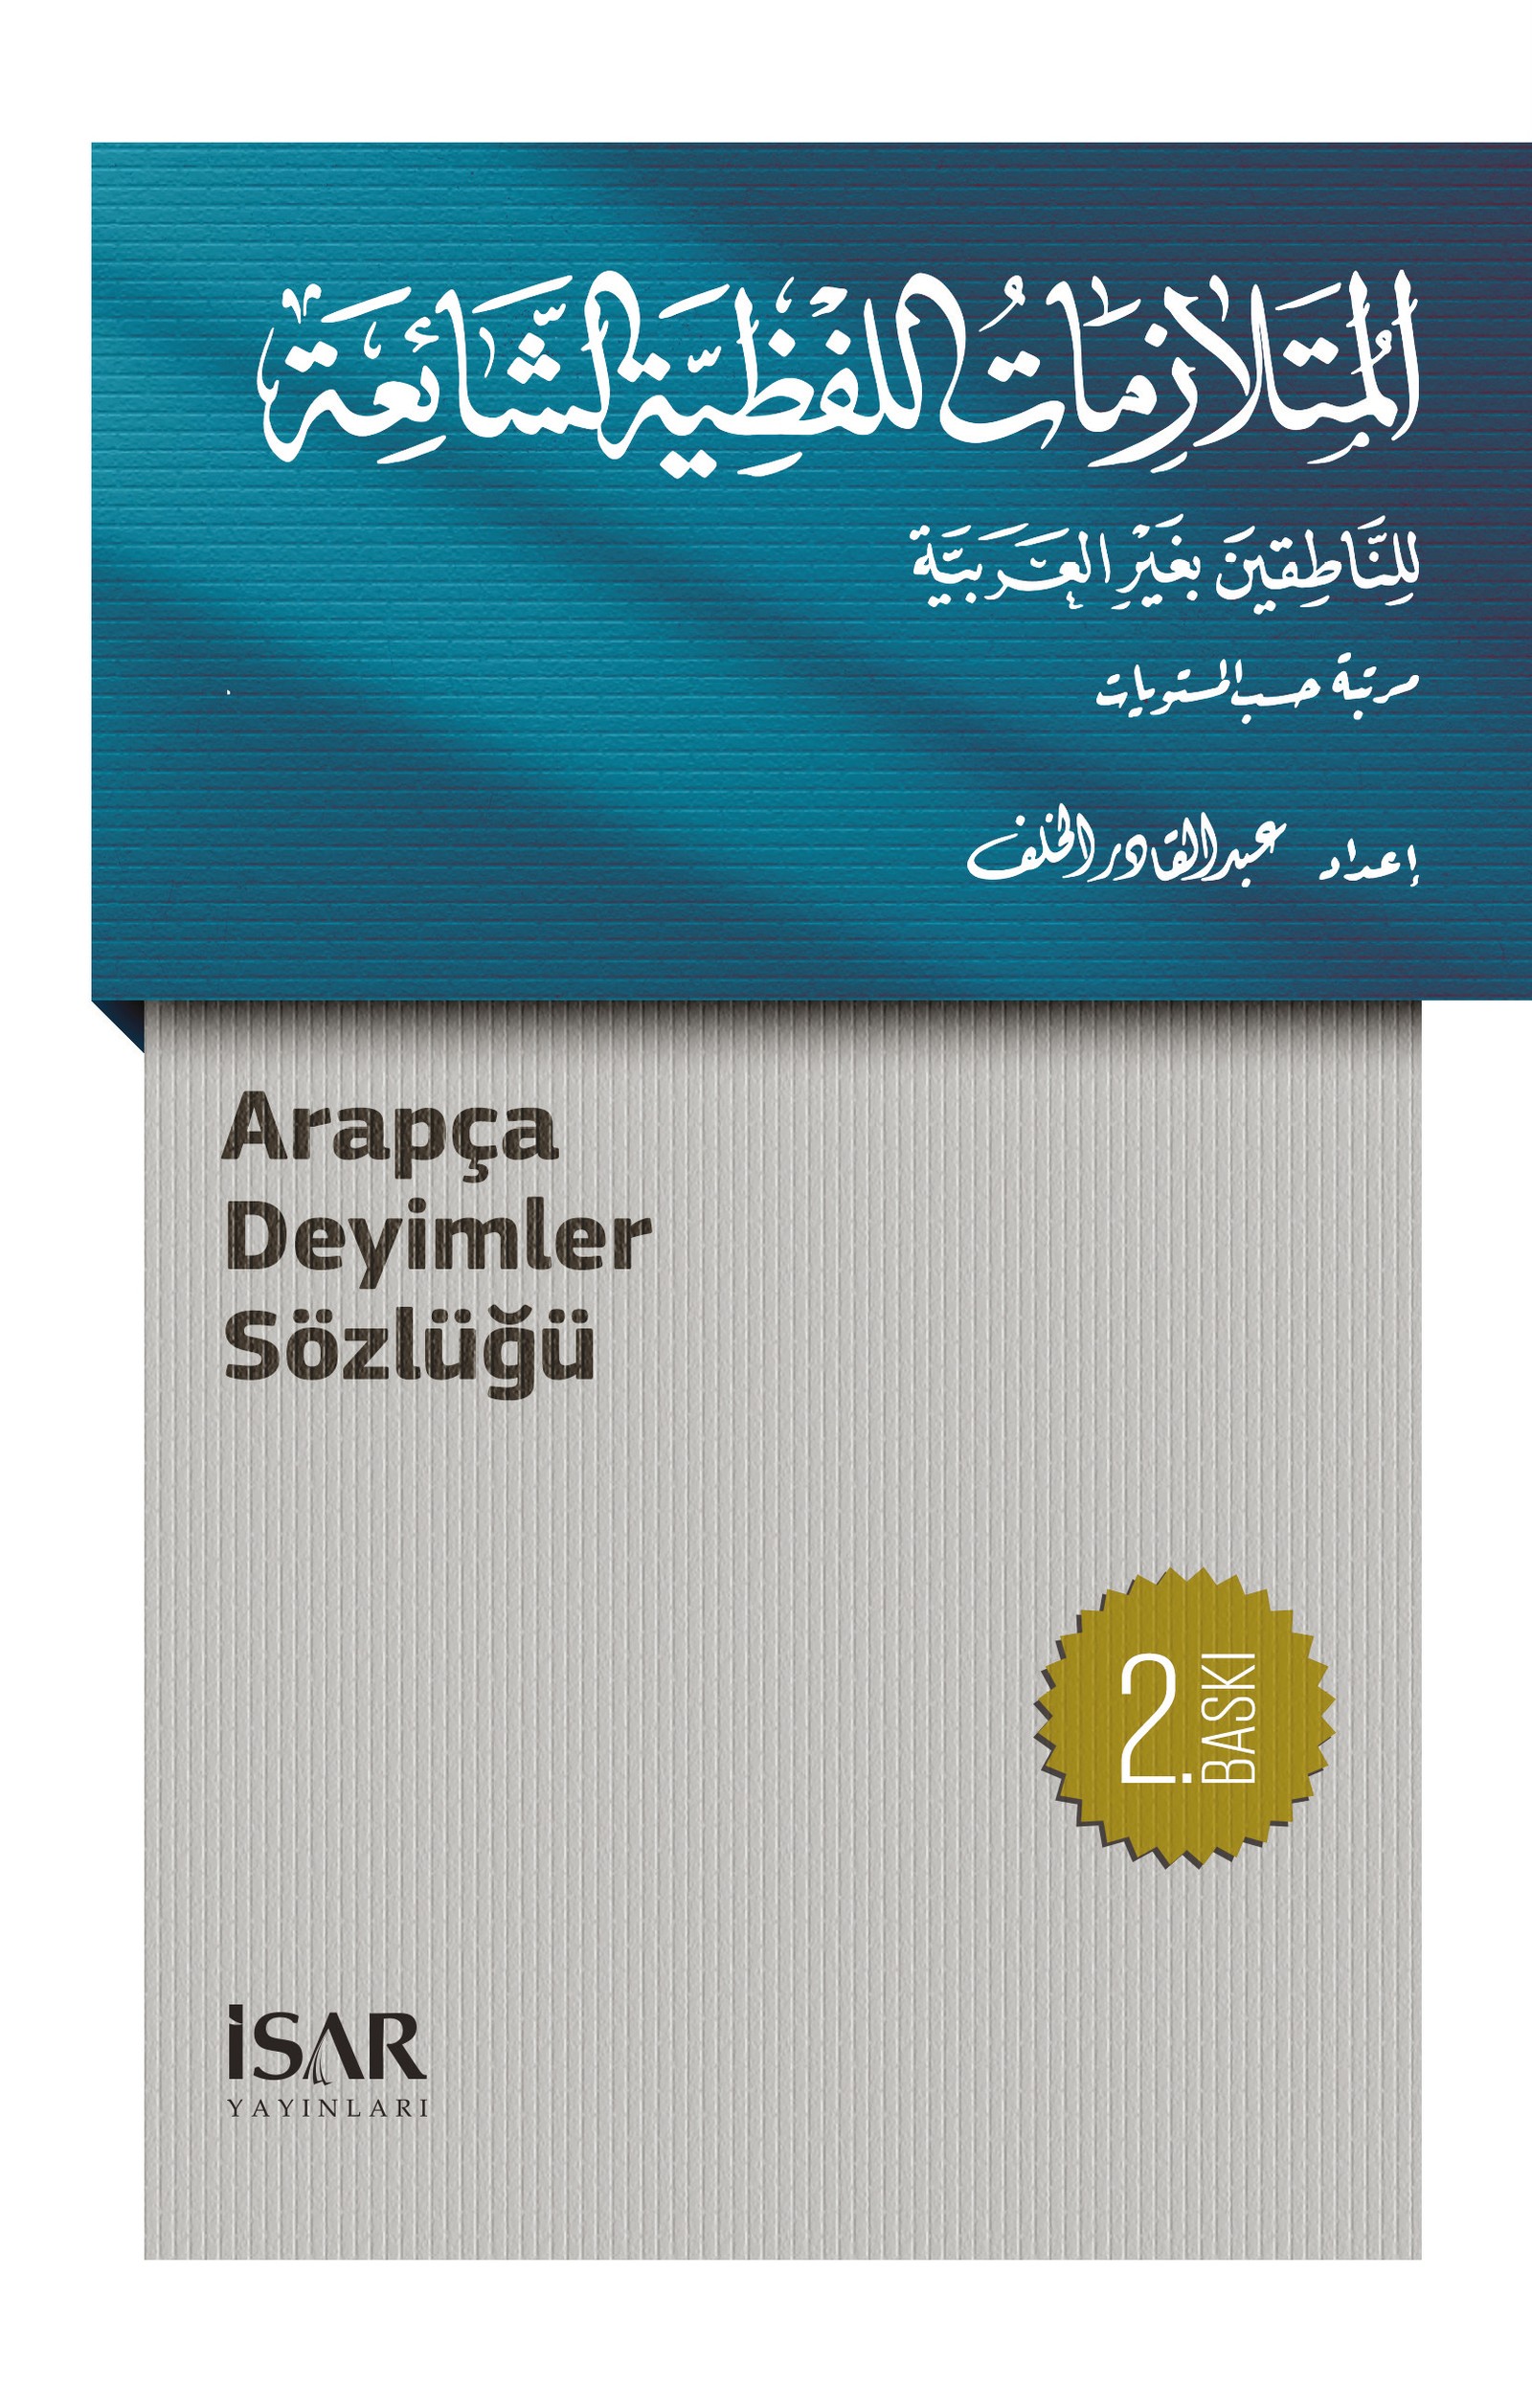 Arapça Deyimler Sözlüğü 2. Baskı 